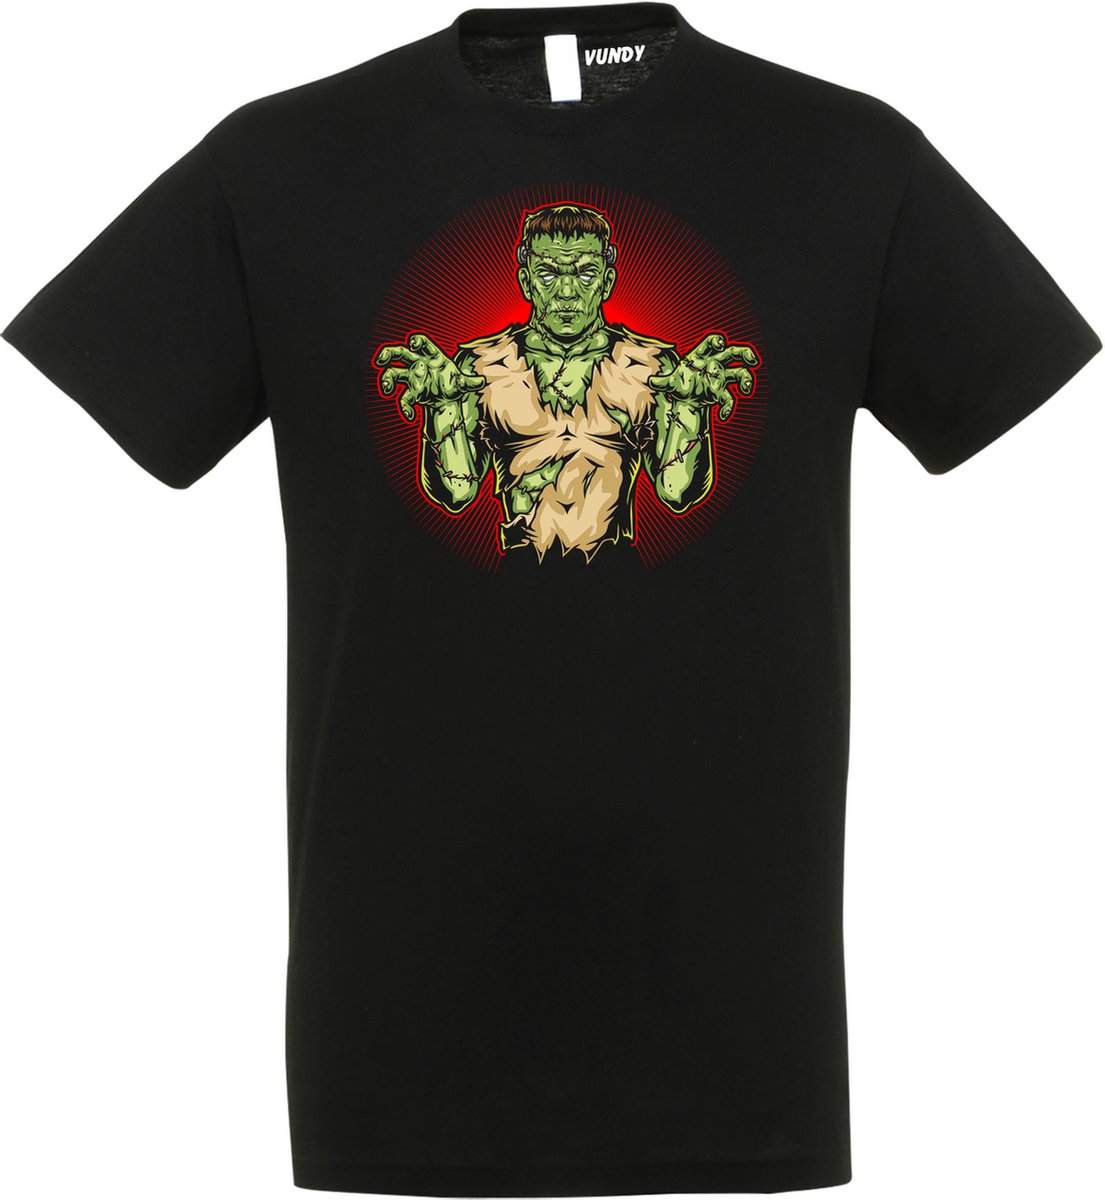 T-shirt Frankenstein | Halloween kostuum kind dames heren | verkleedkleren meisje jongen | Zwart | maat L